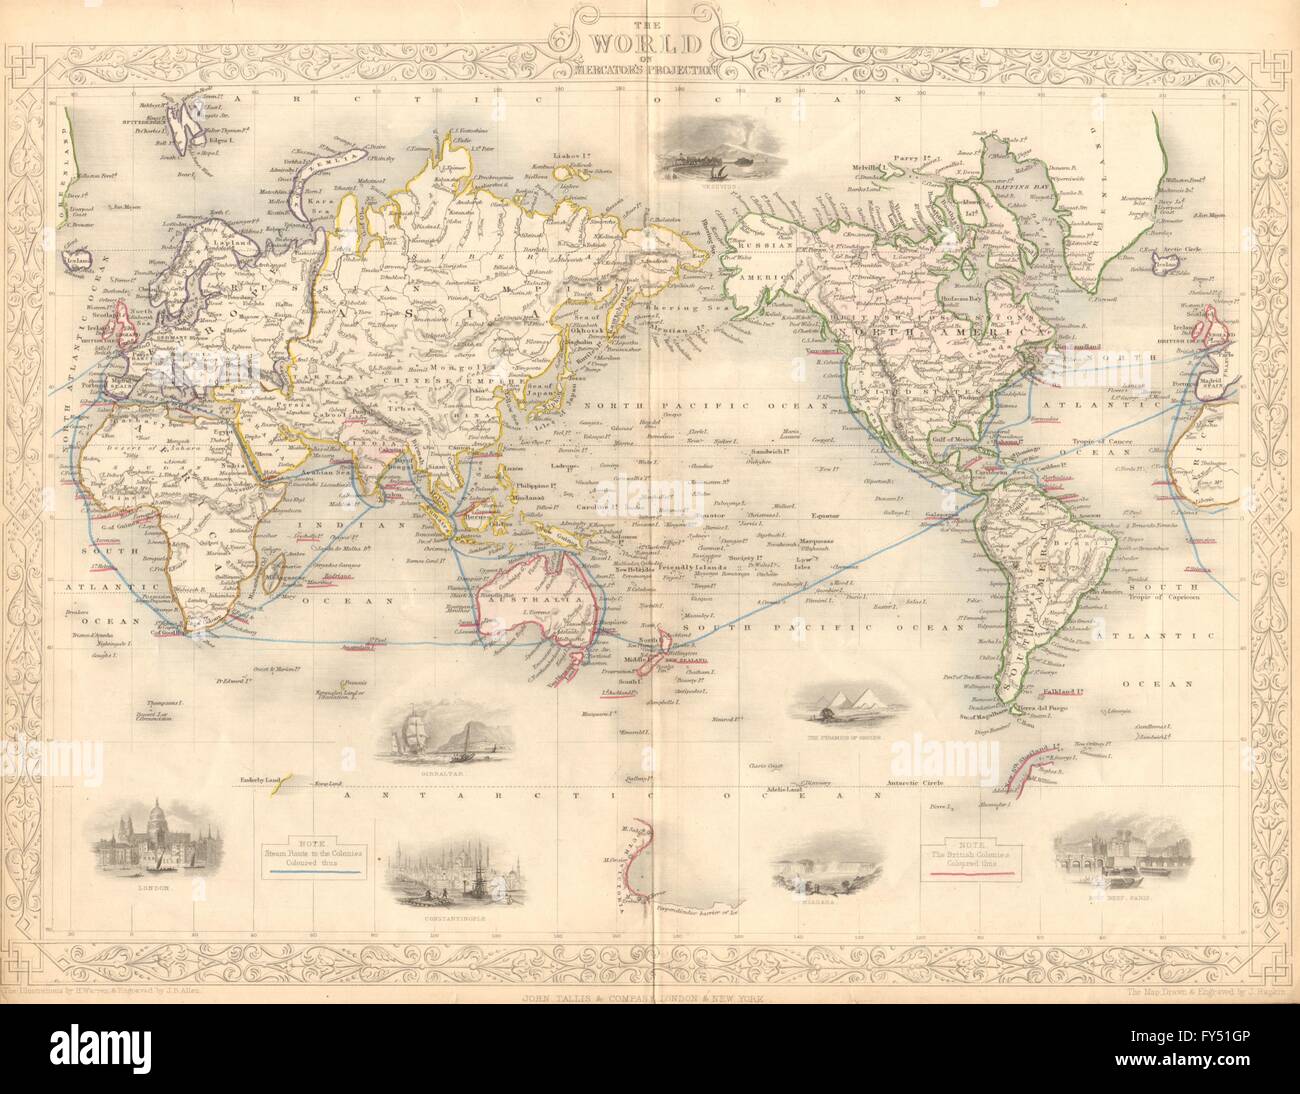 Monde/Empire britannique. L'équipe "itinéraires pour les colonies". TALLIS/RAPKIN, 1849 map Banque D'Images